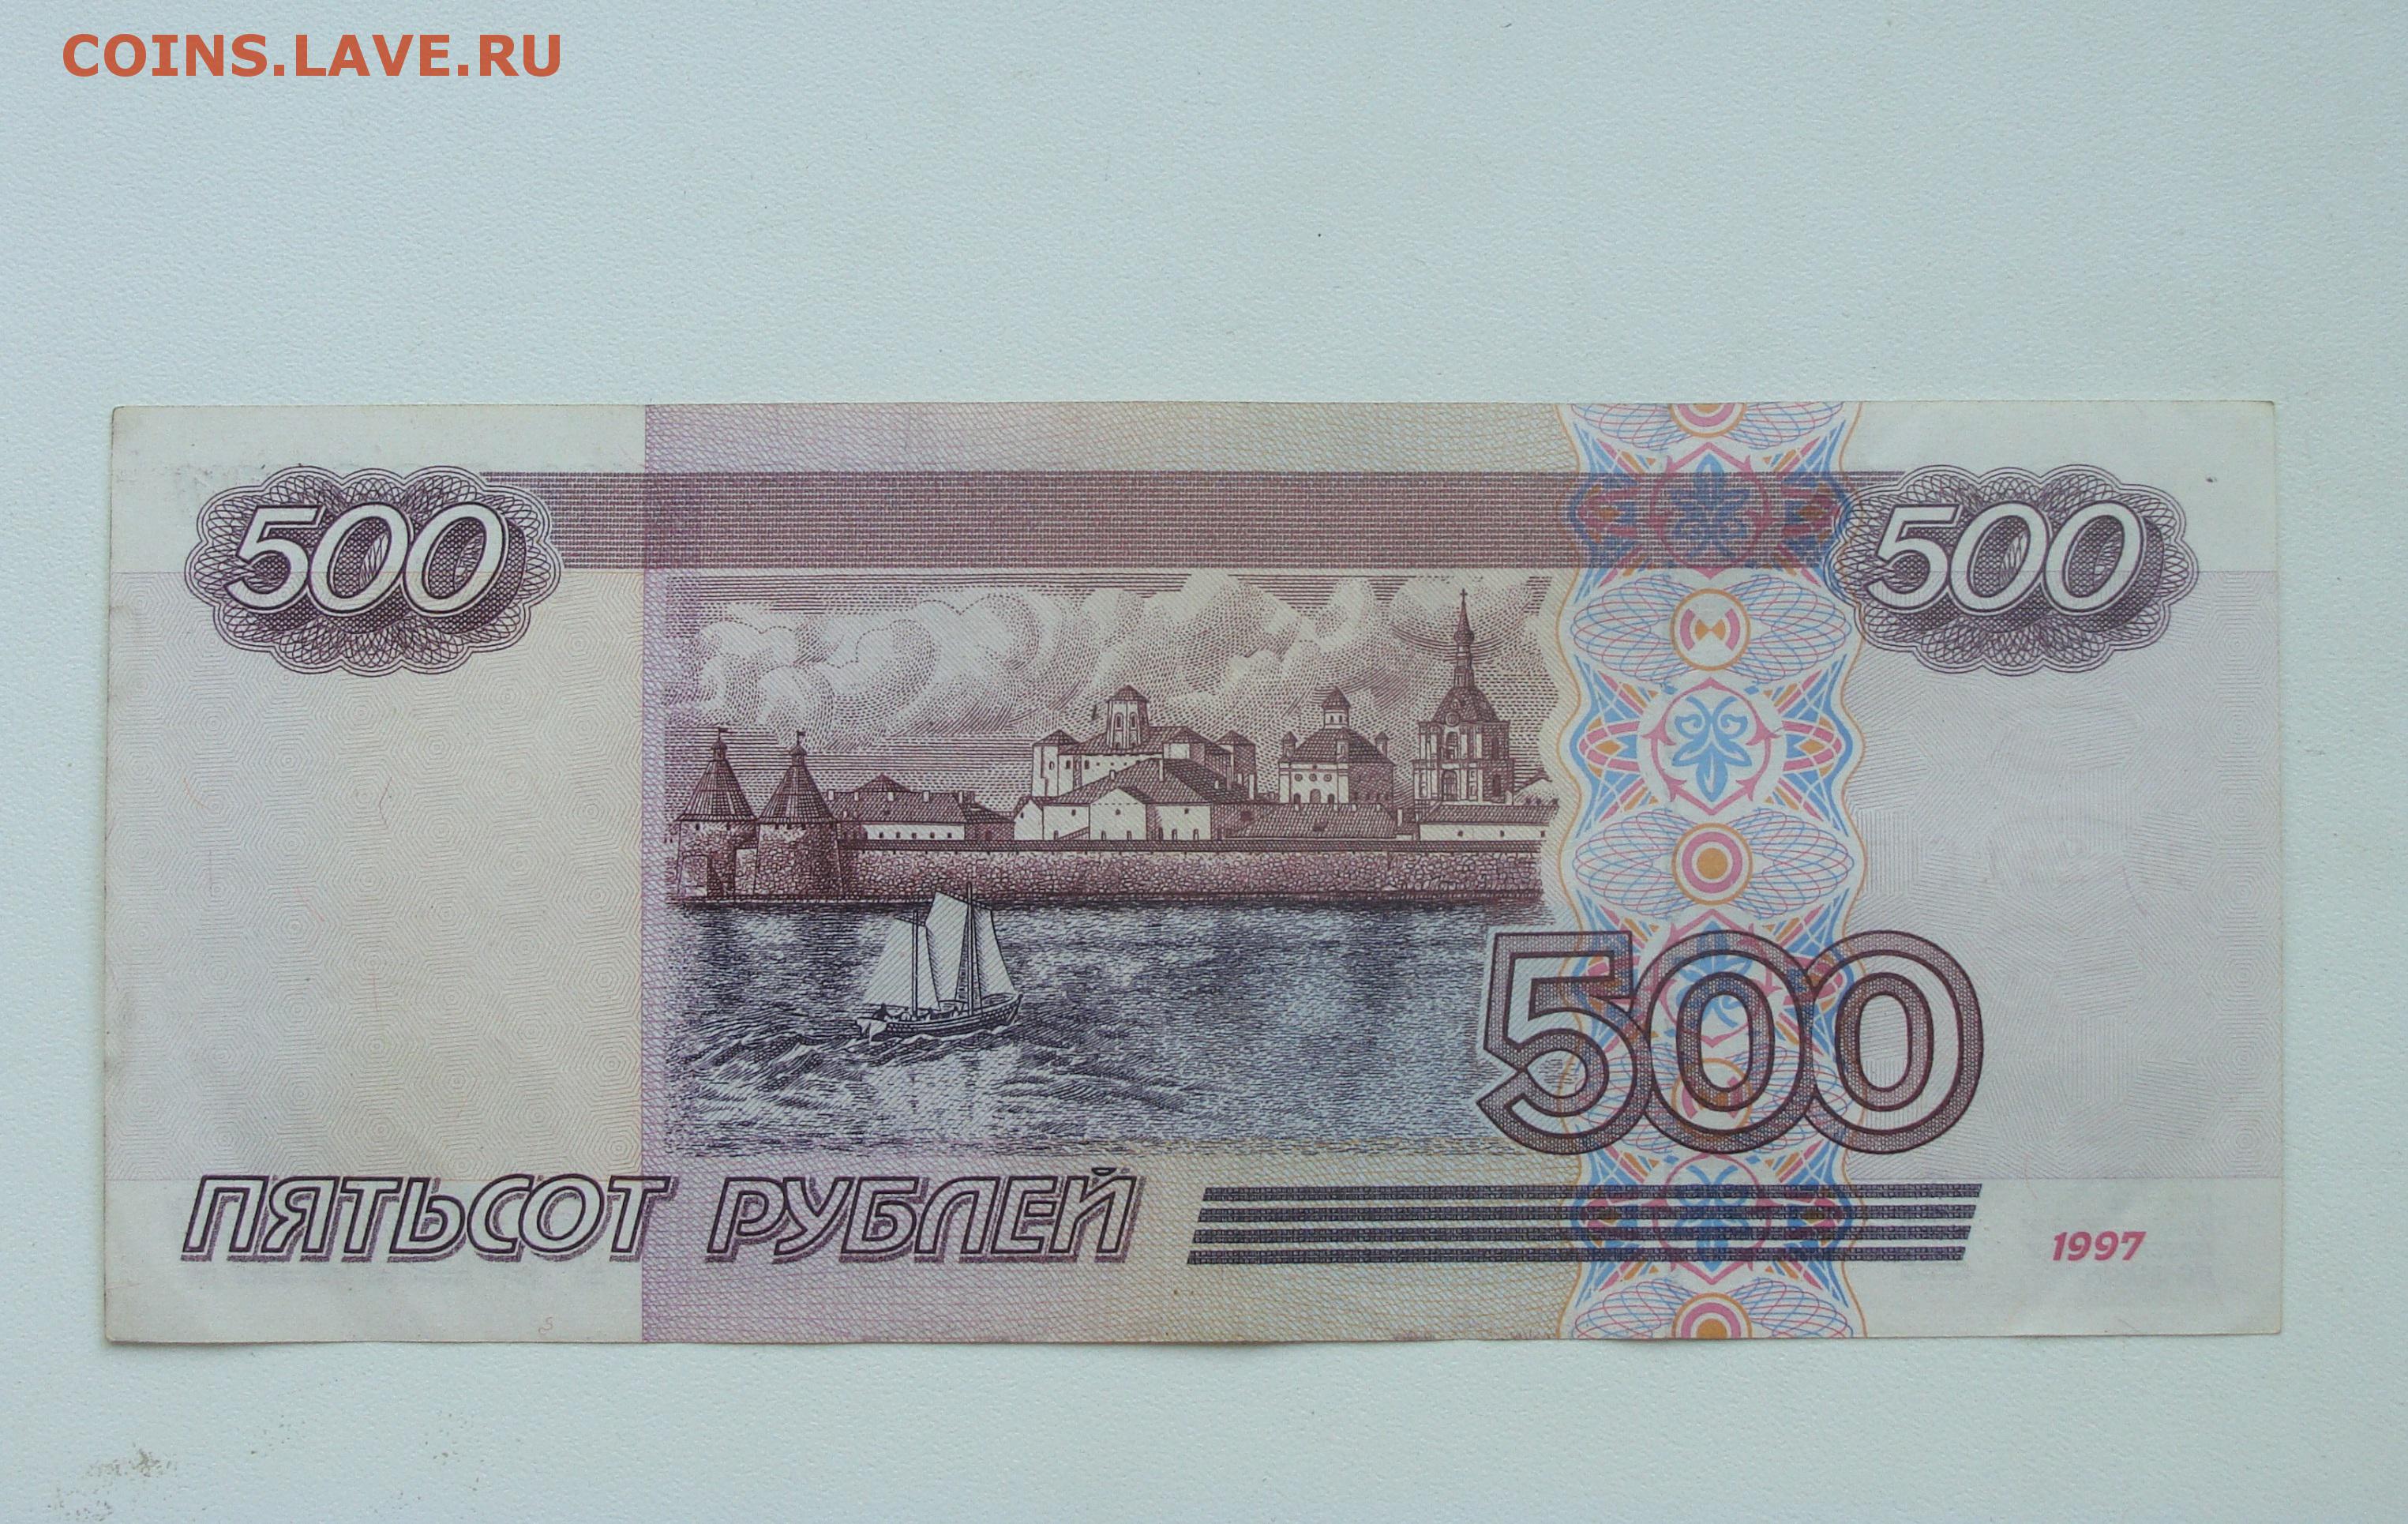 500 рублей 900. 500 Рублей. 500 Рублей 1997 г. модификация 2001 г. 500 Модификация 2001. 500 Рублей 1997 г. модификация 2001 г. до 06.03.